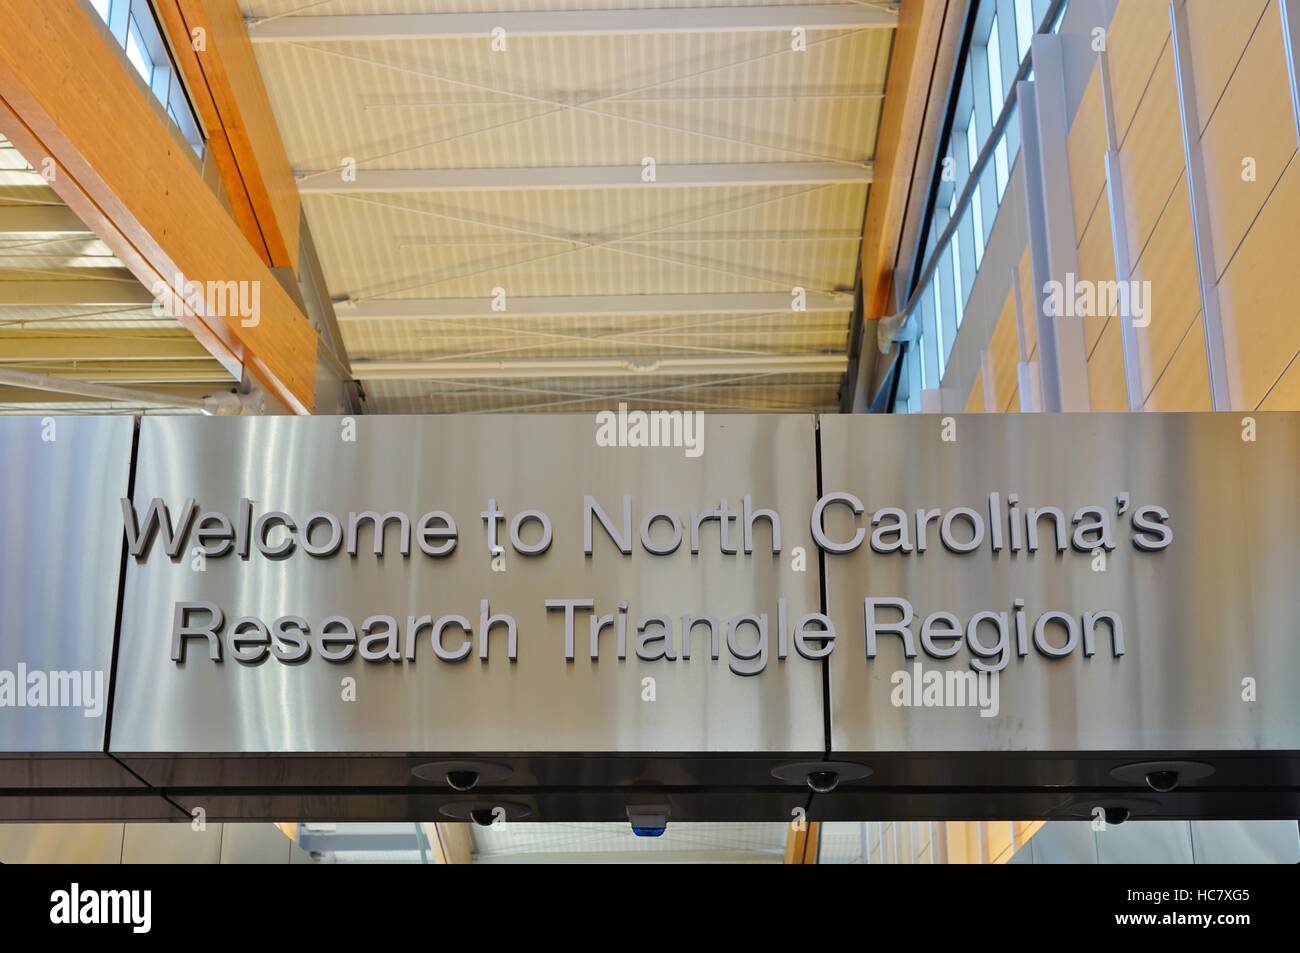 El aeropuerto internacional de Raleigh-Durham (RDU) es el principal aeropuerto que presta servicios a la región del triángulo de investigación de Carolina del Norte. Foto de stock